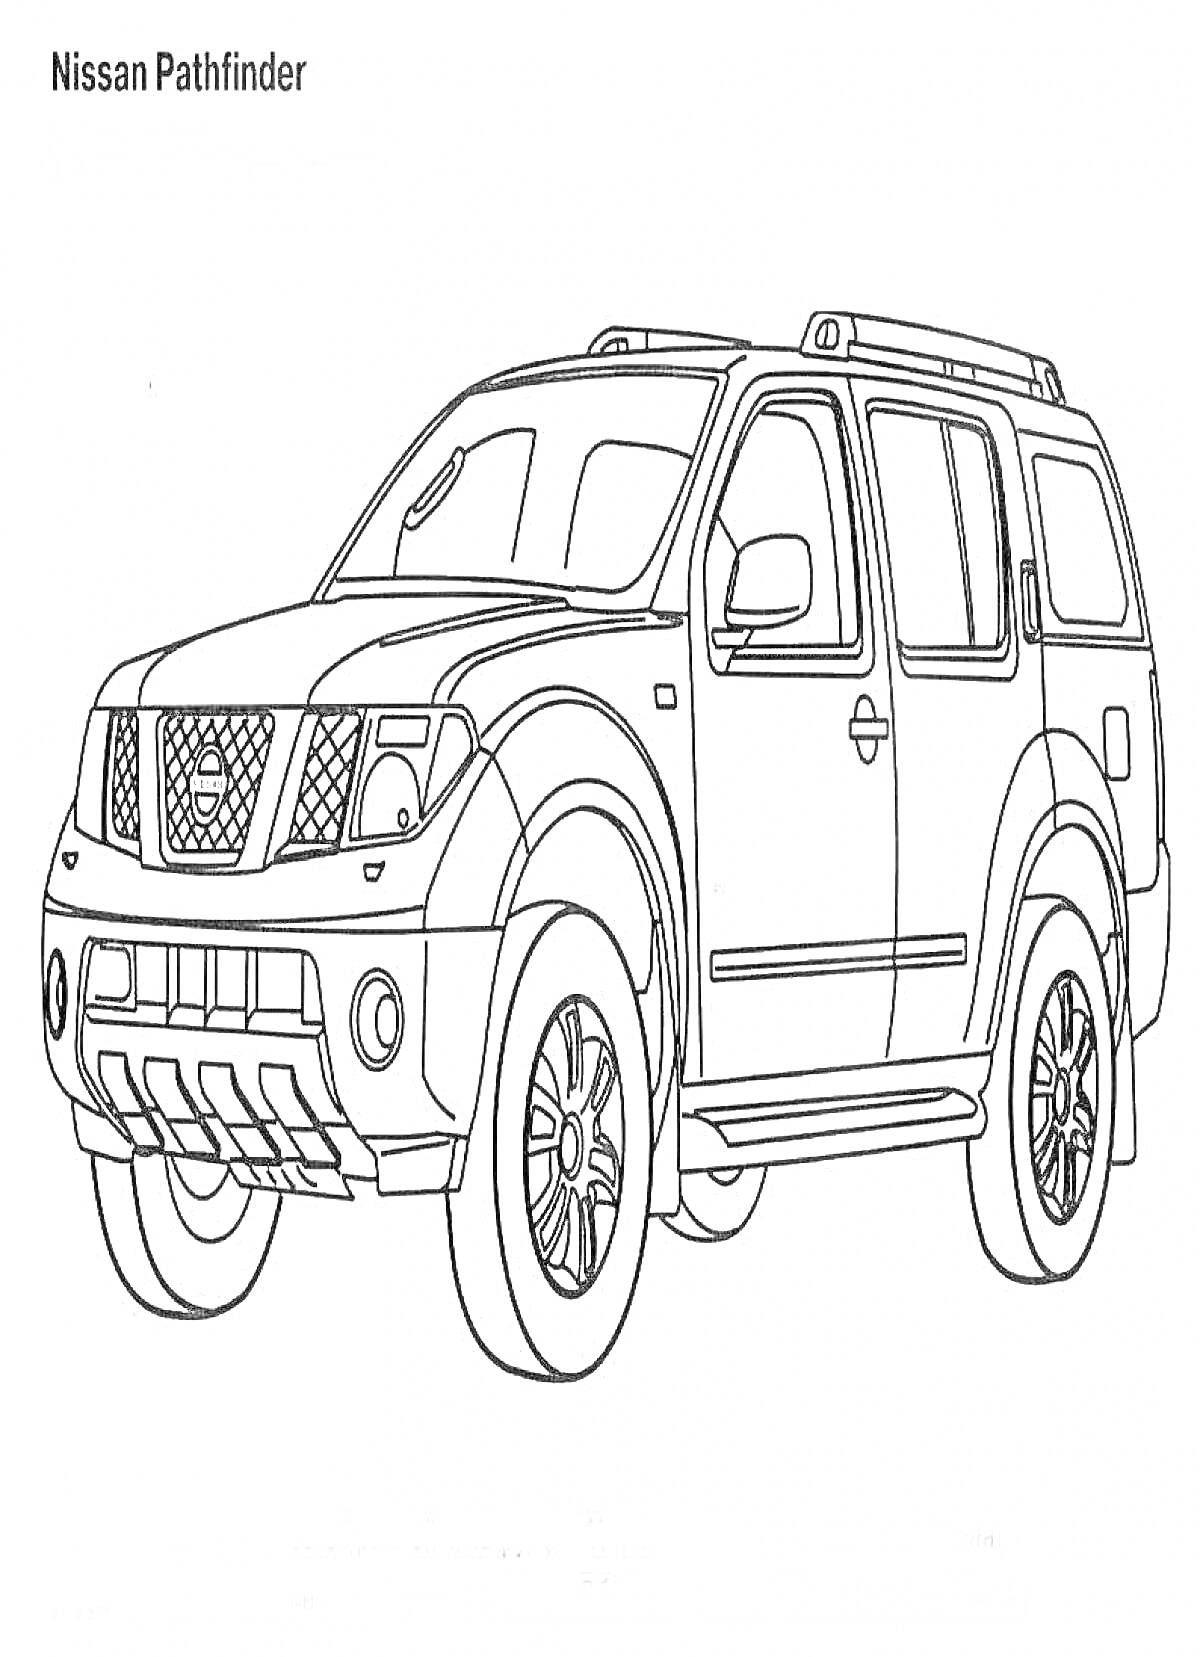 Nissan Pathfinder, внедорожник с четырьмя дверями, решетка радиатора, зеркала, колеса, ручки на крыше, фары